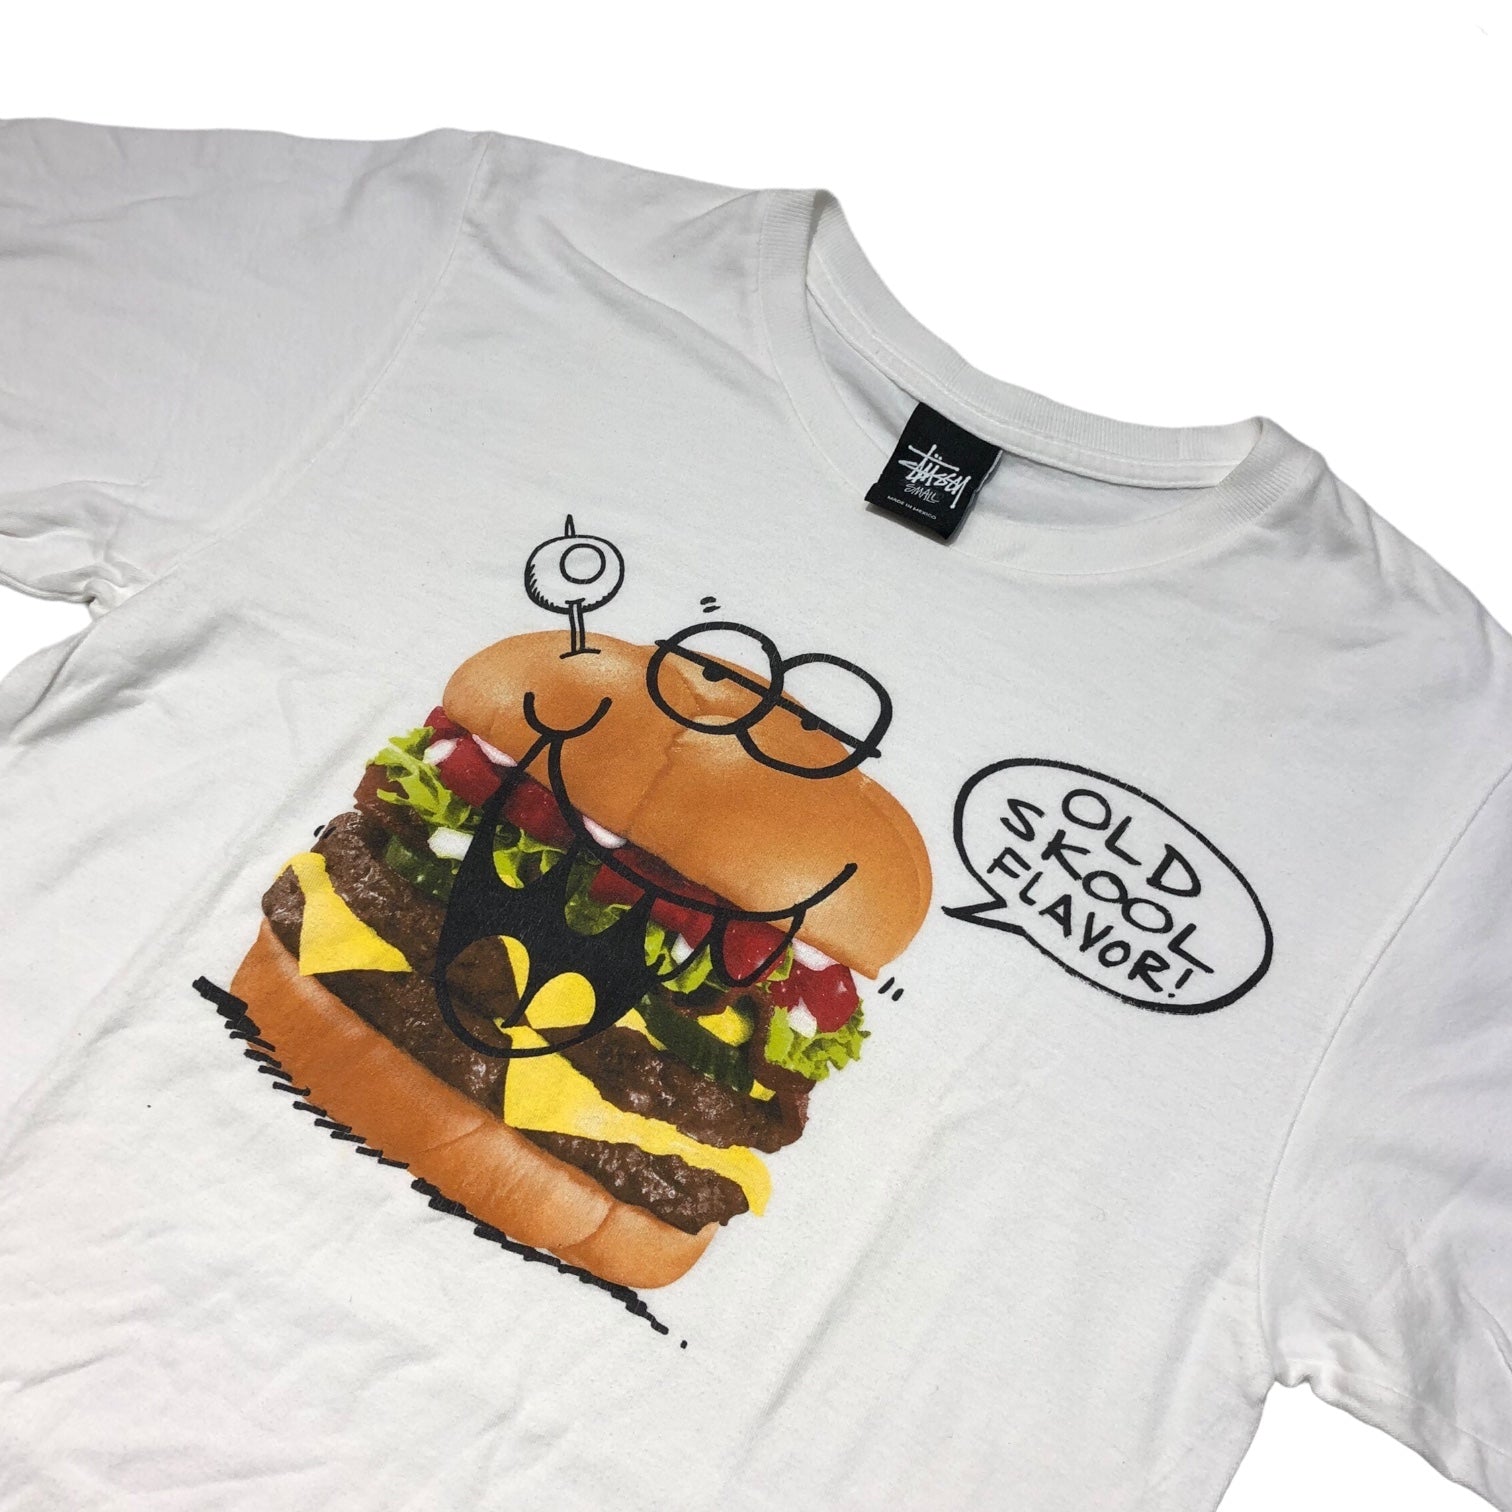 STUSSY(ステューシー) OLD SKOOL FLAVOR Hamburger T-shirt S ホワイト×マルチカラー